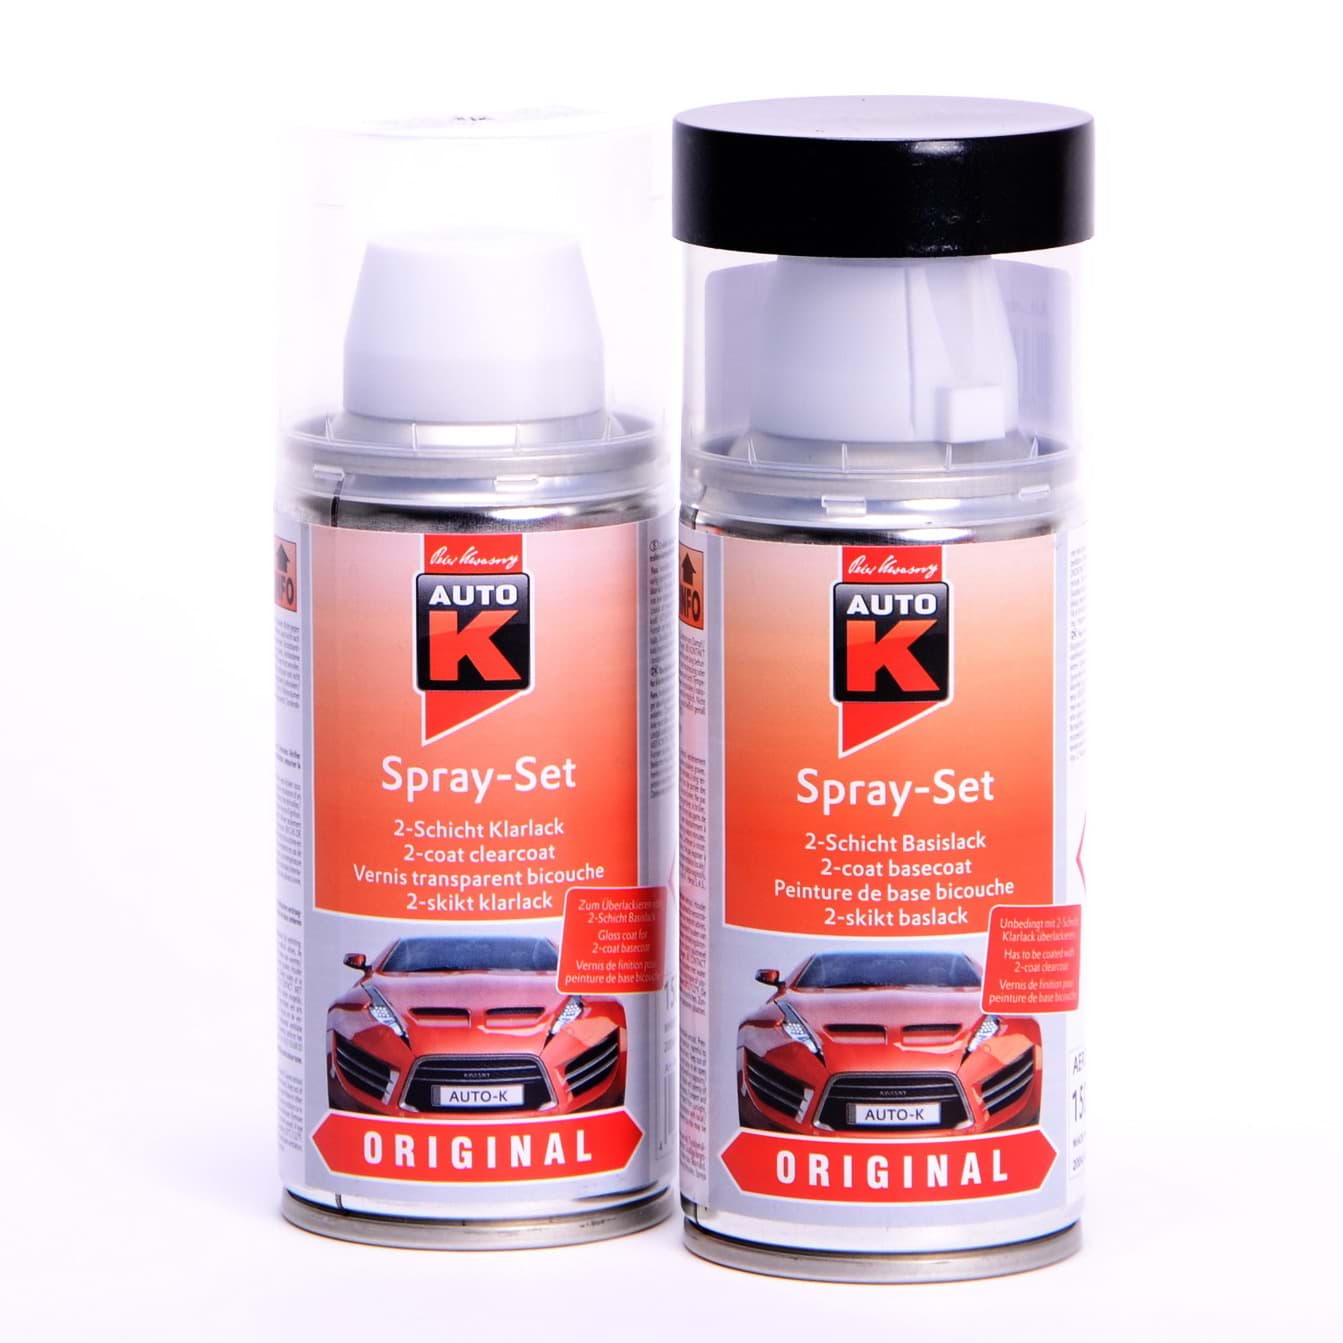 Afbeelding van Auto-K Spray-Set Autolack für Fiat 639 Grigio Quartz met 24474